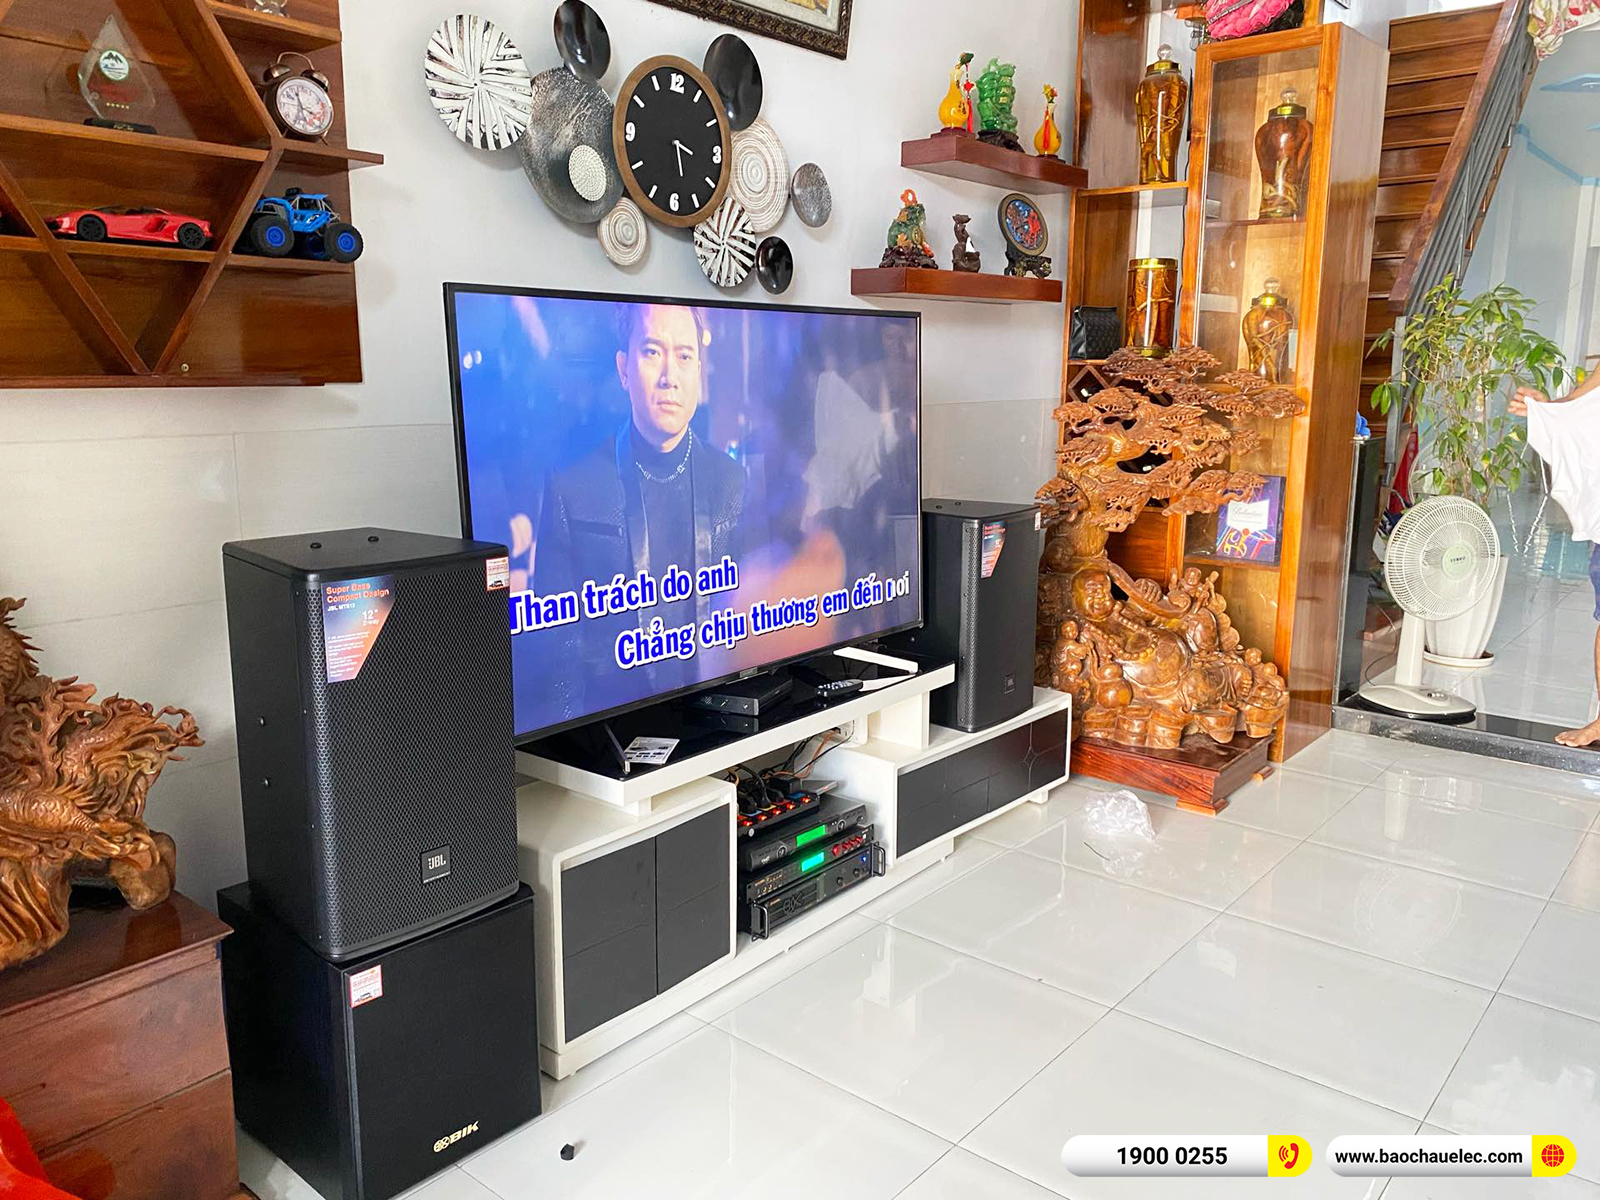 Lắp đặt dàn karaoke JBL gần 50tr cho anh Tuyên tại Đồng Nai